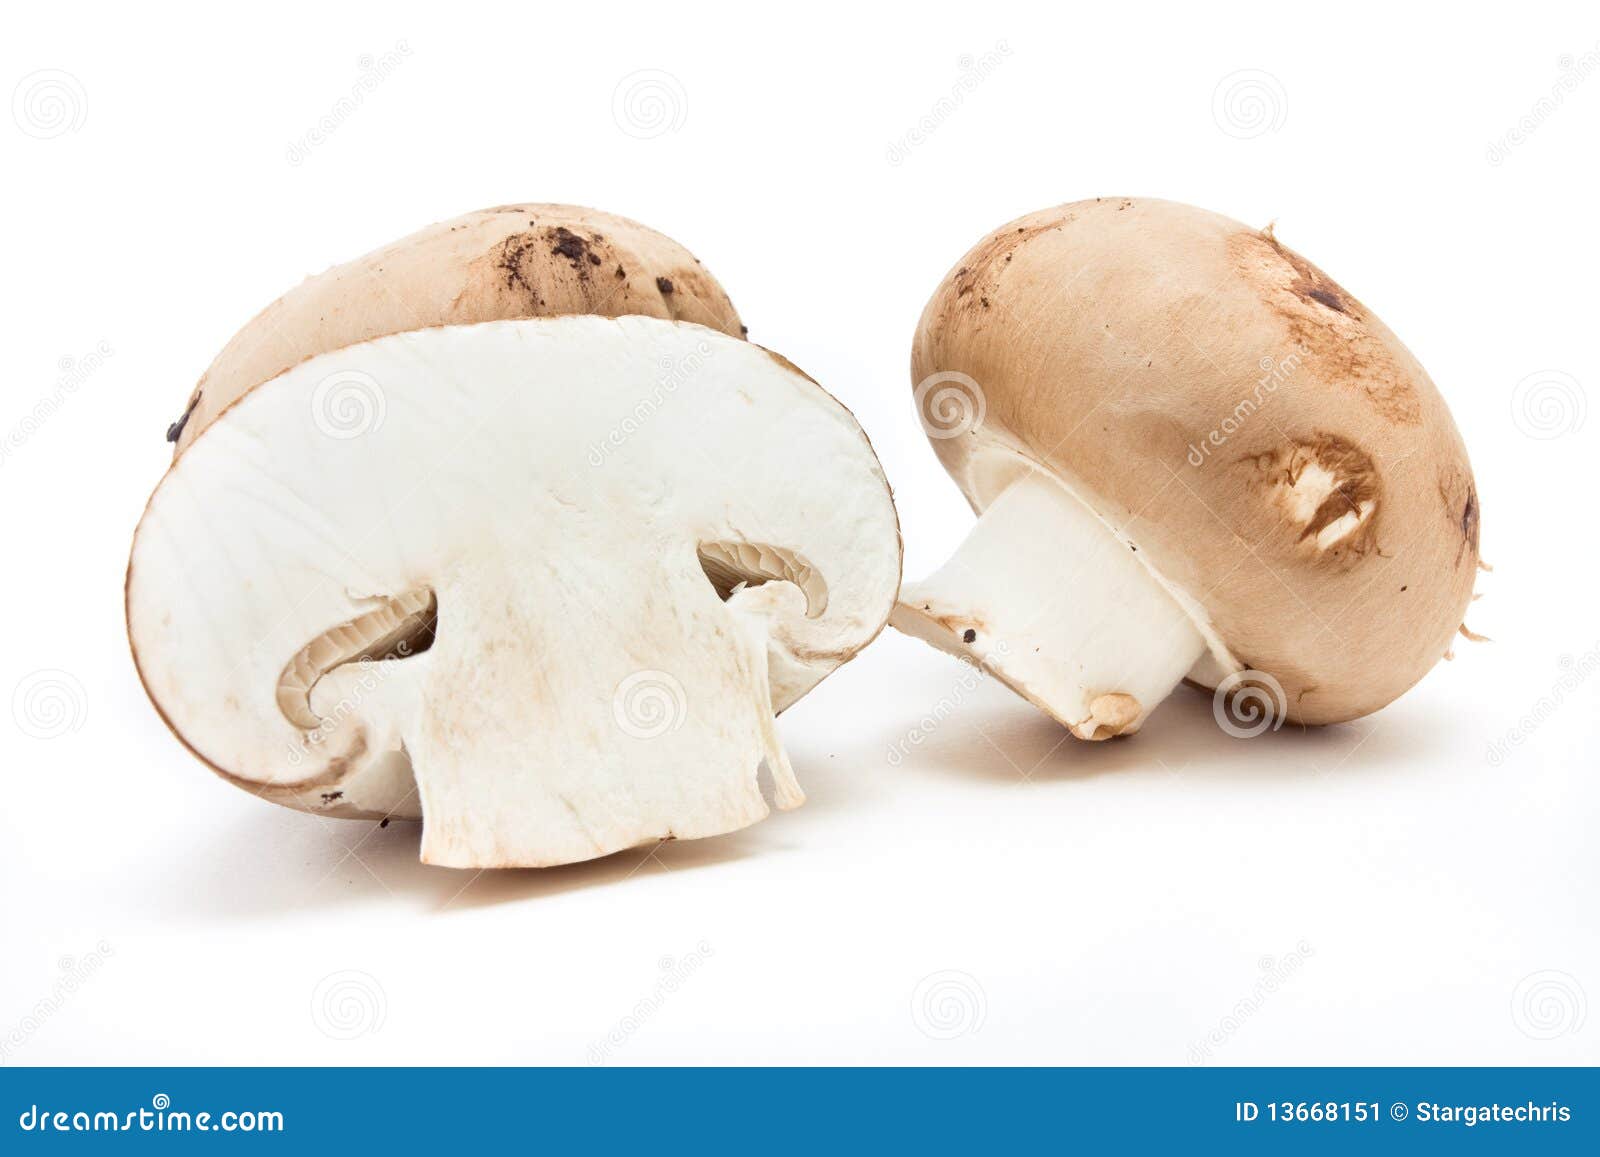 栗子蘑菇 库存图片. 图片 包括有 牛奶, 构成, 绿色, 可食, 营养, 成份, 饮食, 蘑菇, 庄稼 - 25186215